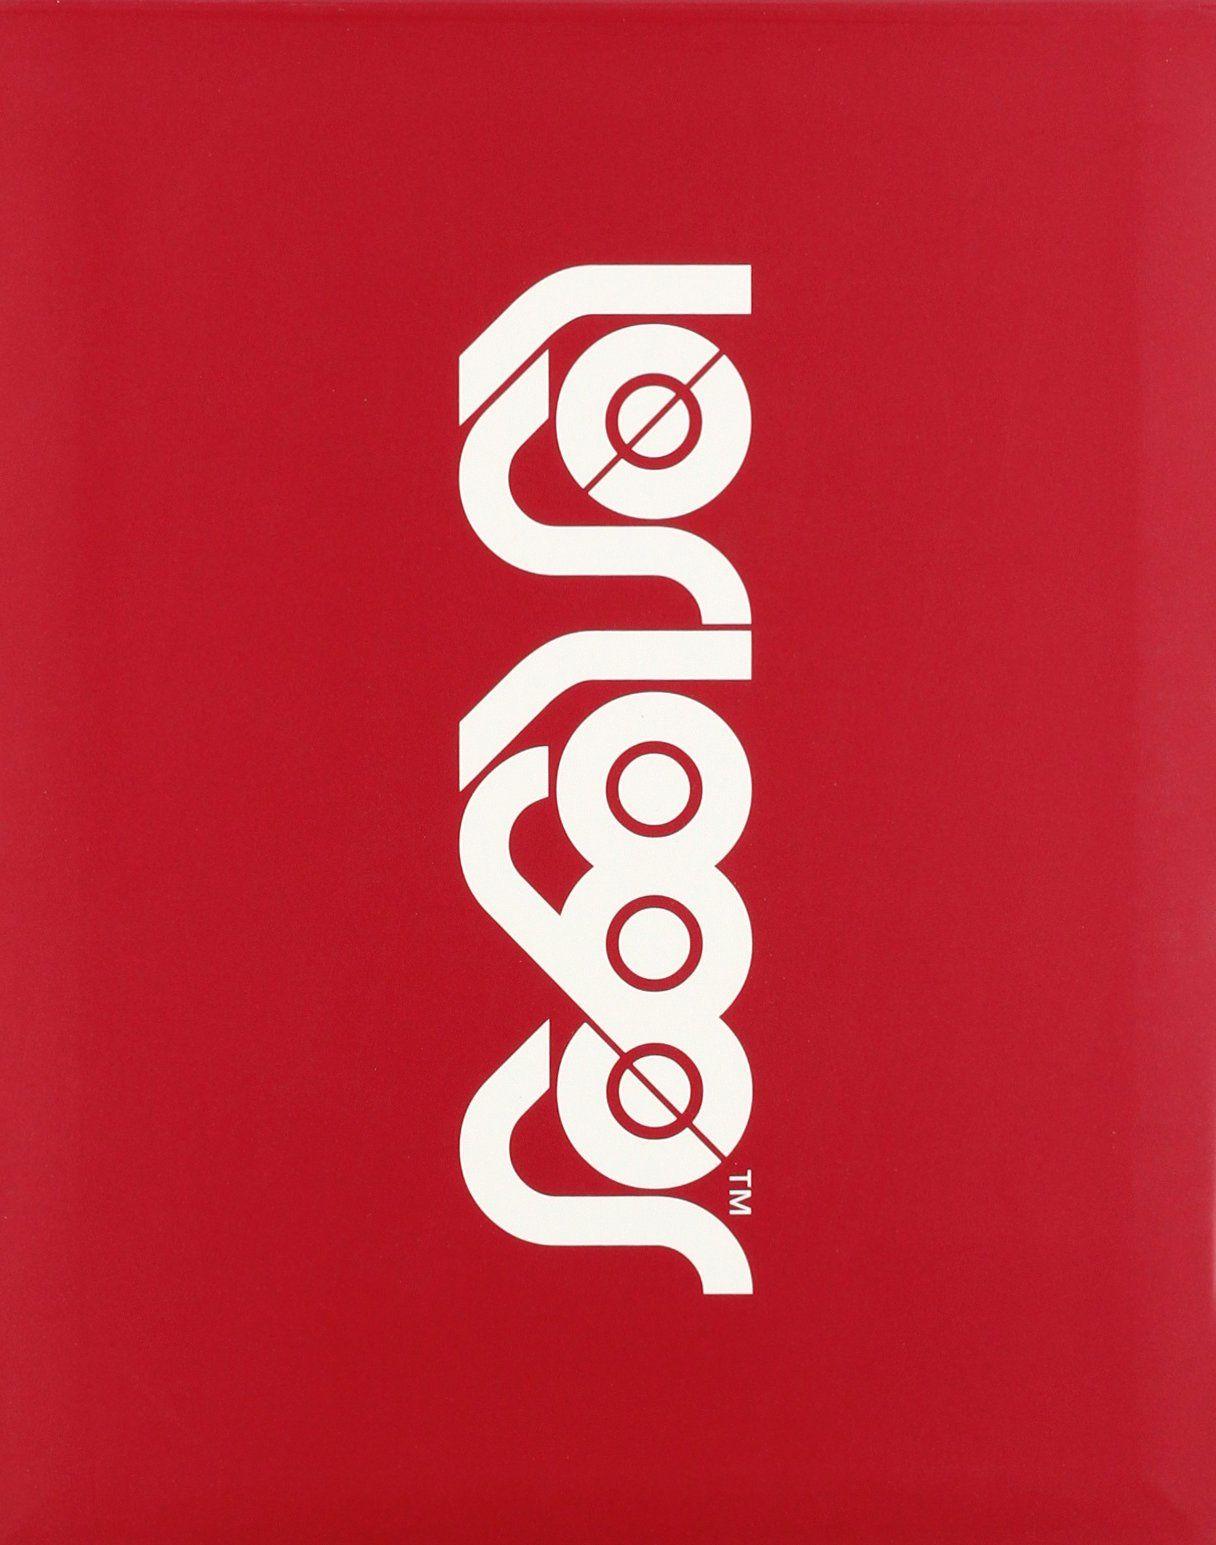 Los Logo - Los Logos (Logos Series): Amazon.co.uk: R. Klanten, M. Mischler, N ...